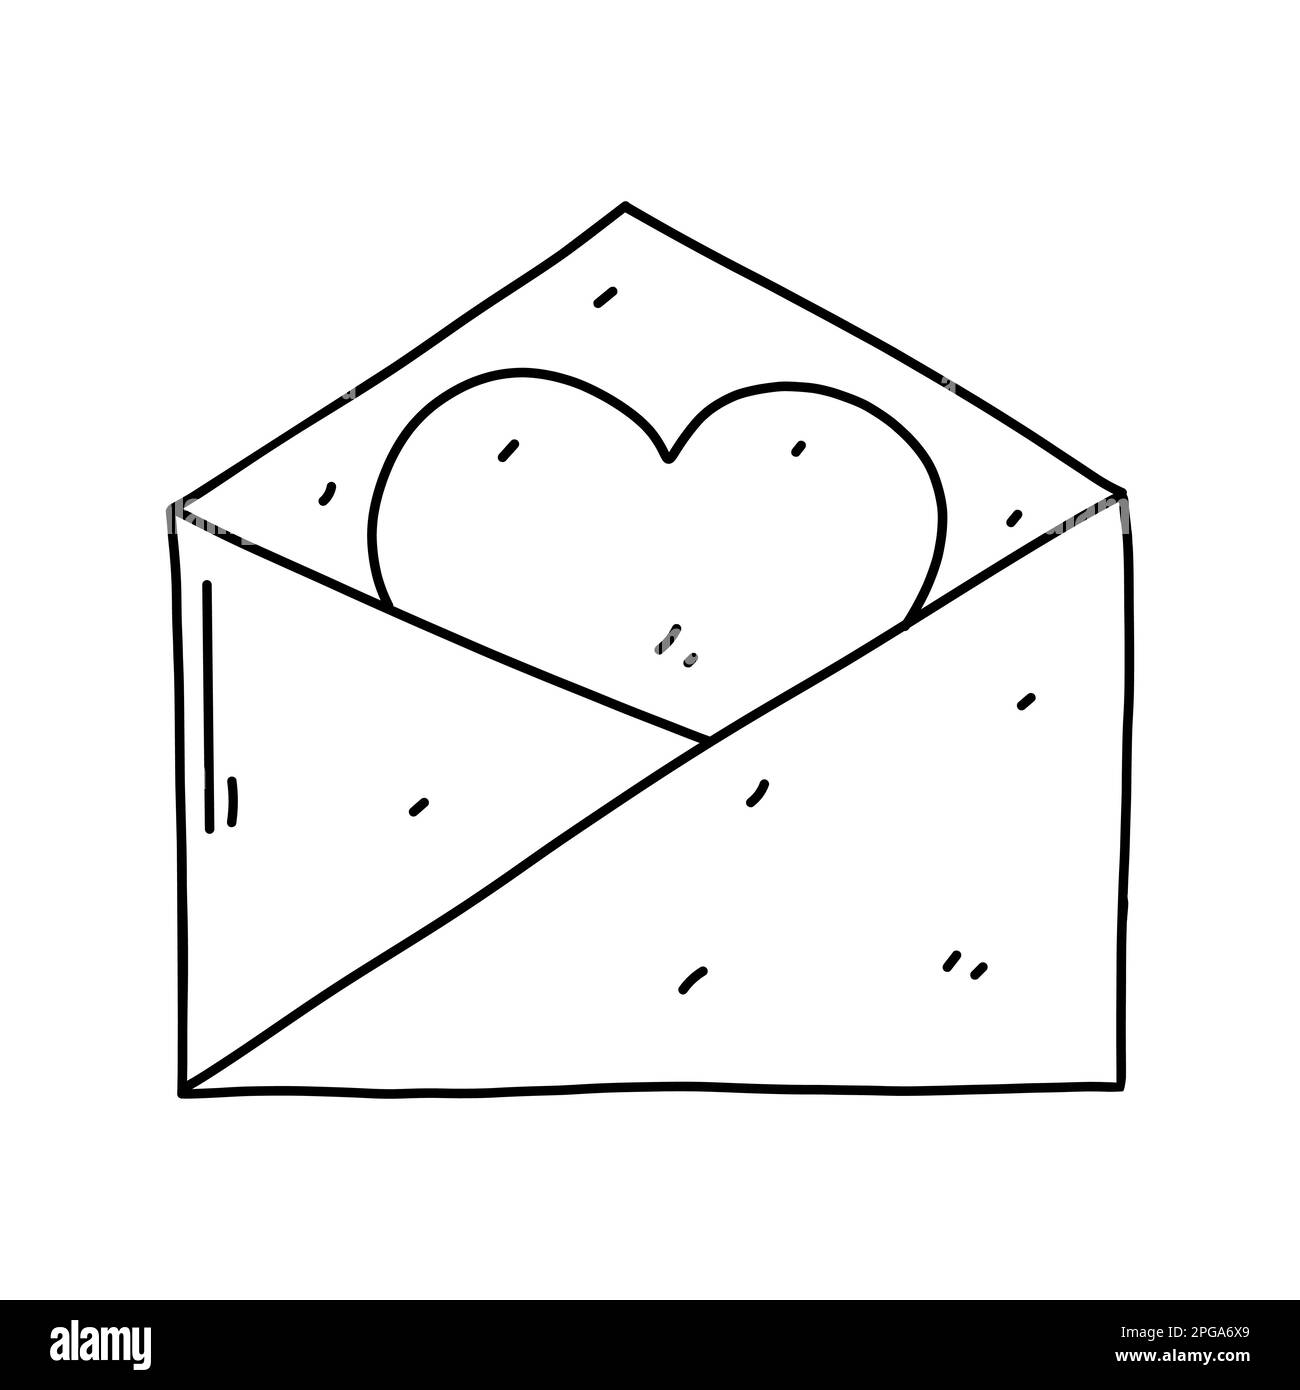 Lettera d'amore in stile doodle disegnato a mano. Illustrazione vettoriale isolata su sfondo bianco Illustrazione Vettoriale